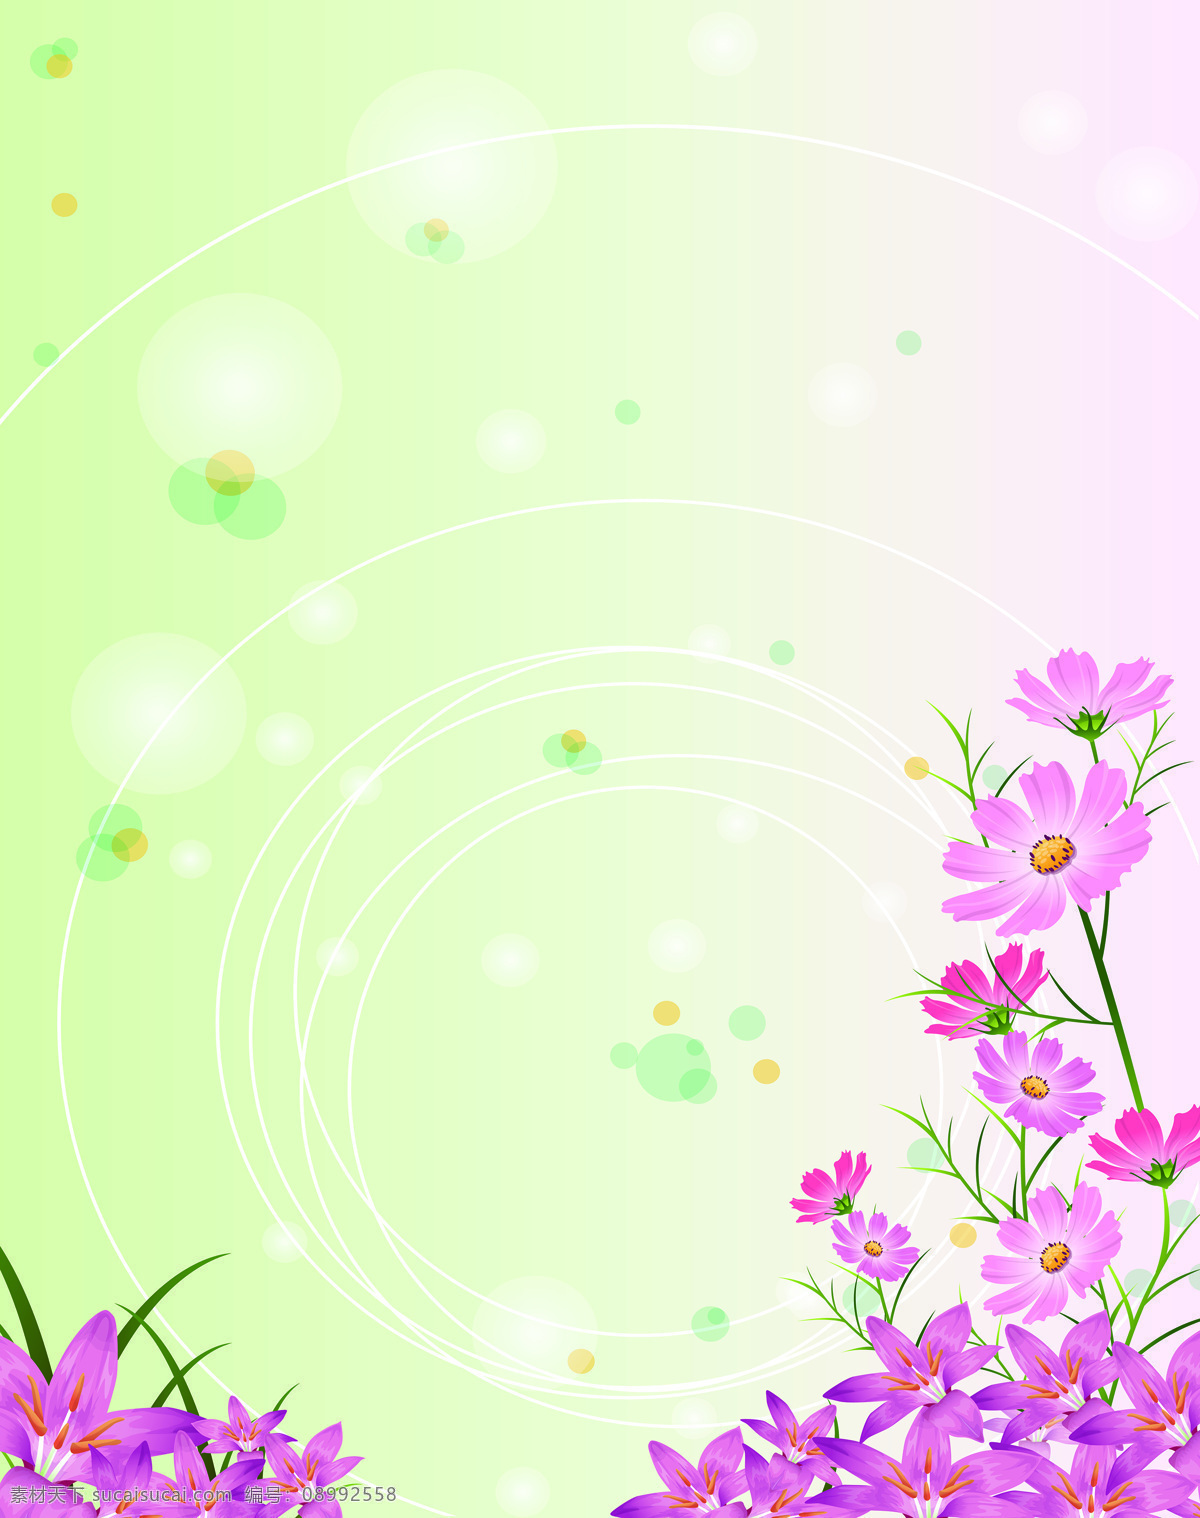 梦幻 紫色 花朵 背景 手绘 蝴蝶兰 边框 唯美 光圈